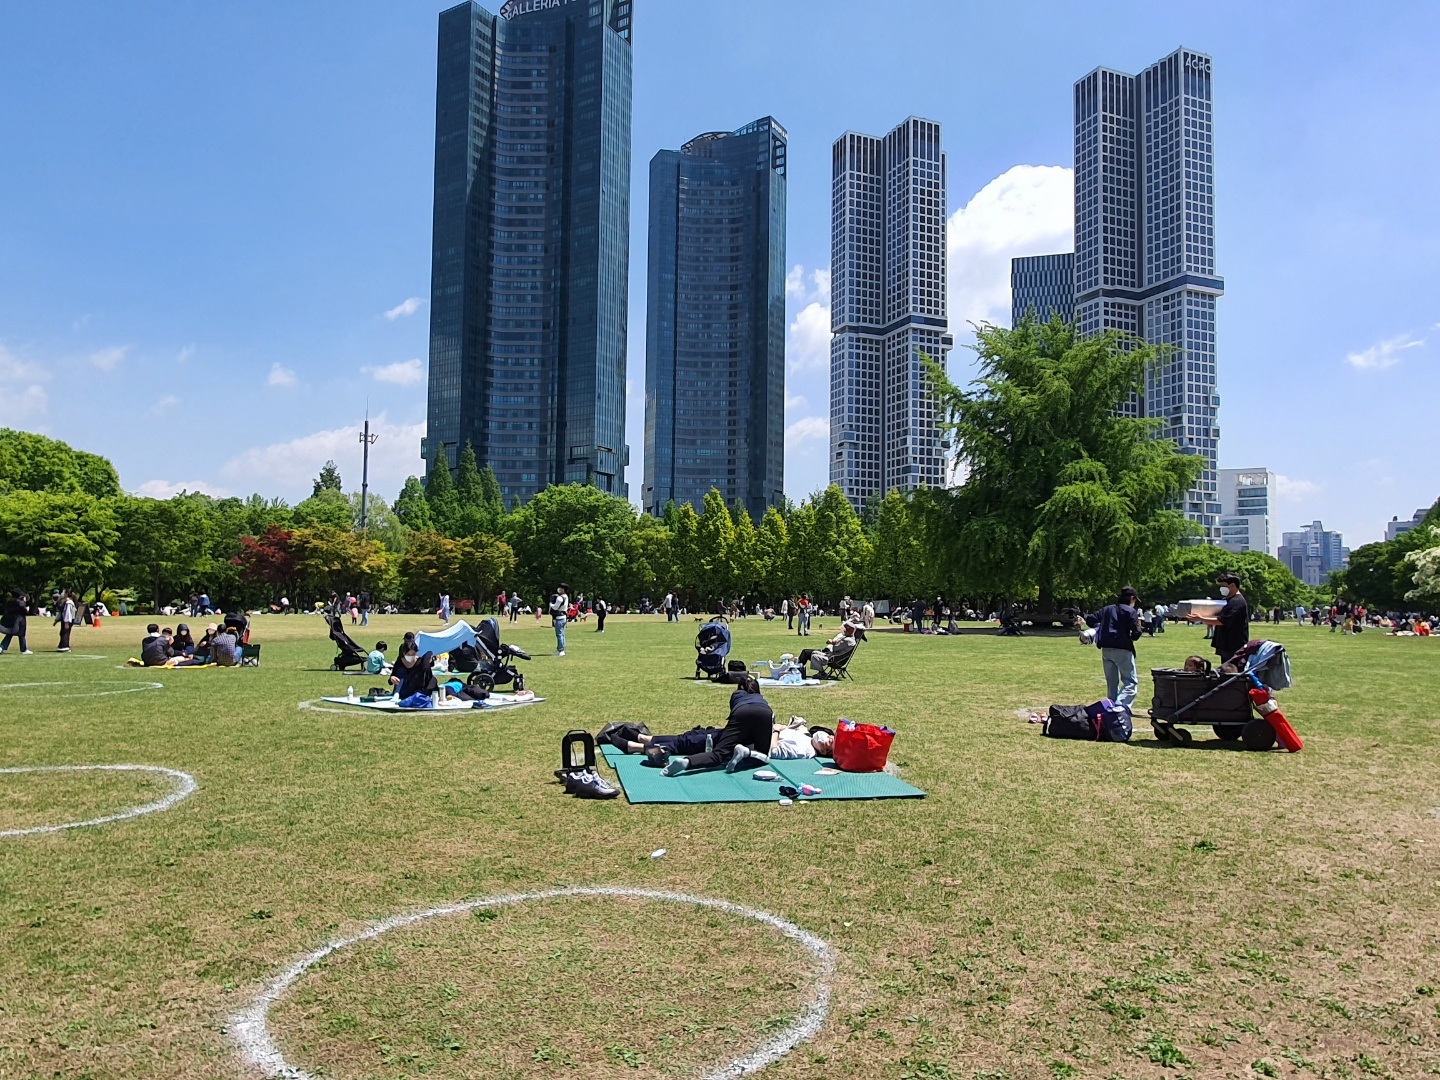 어린이날인 5일 서울 성동구 서울숲에 가족이나 친구들과 놀러 나온 사람들이 돗자리를 펴고 앉아 있다. 잔디밭에는 거리두기 간격 유지를 위한 동그라미가 그려져 있다.